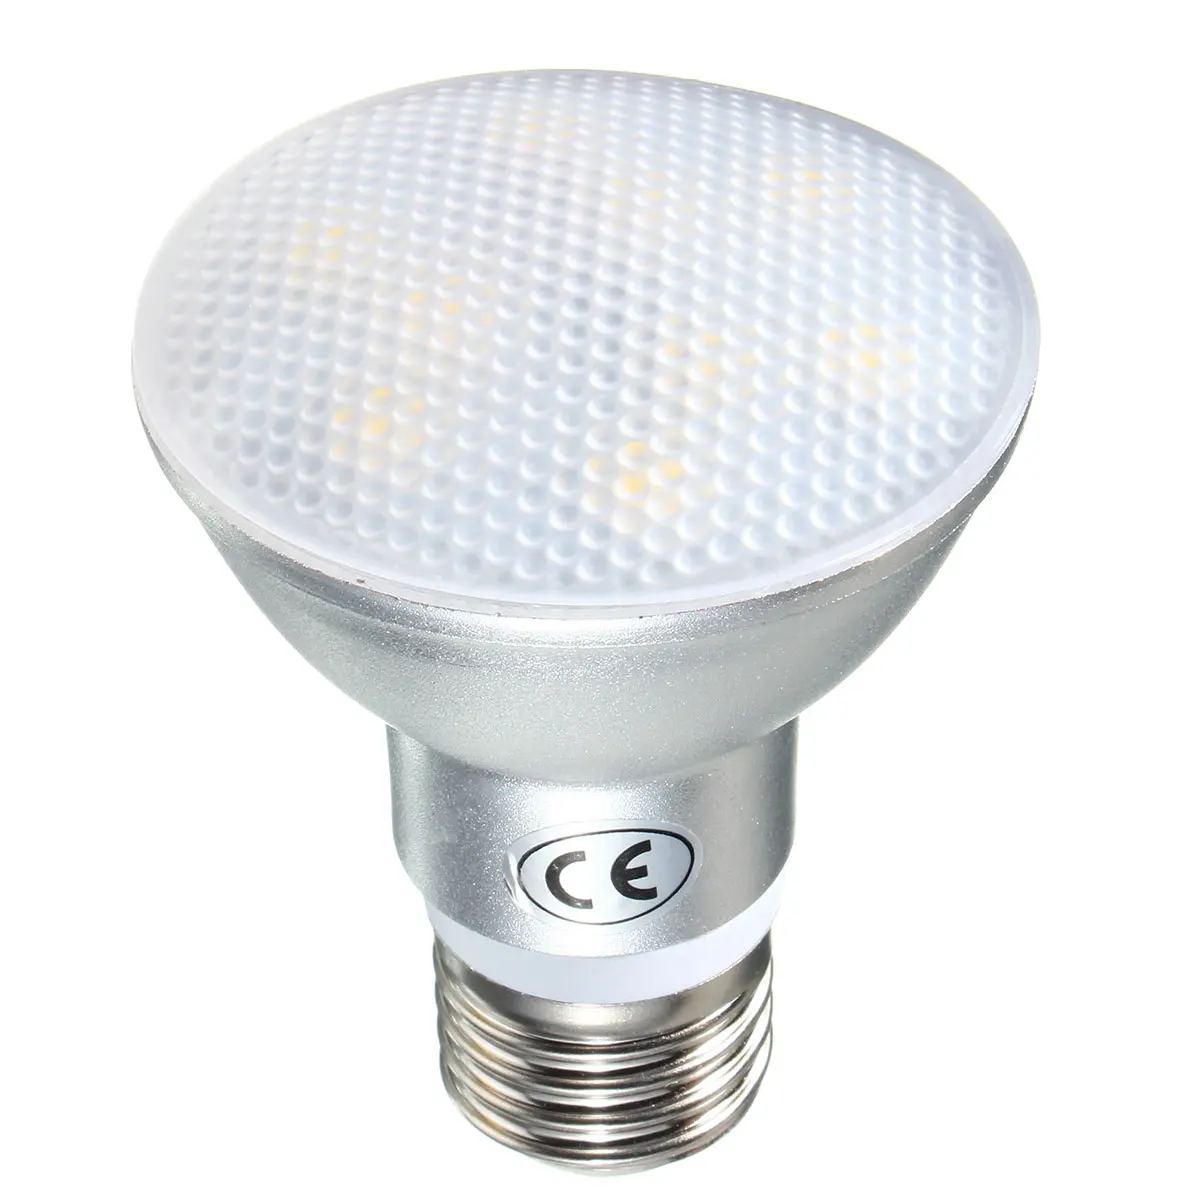 

Smuxi 9W/12W/15W/18W E27 PAR20 PAR30 PAR38 Waterproof IP65 LED Spot Light Bulb Lamp Indoor Lighting Dimmable AC220V